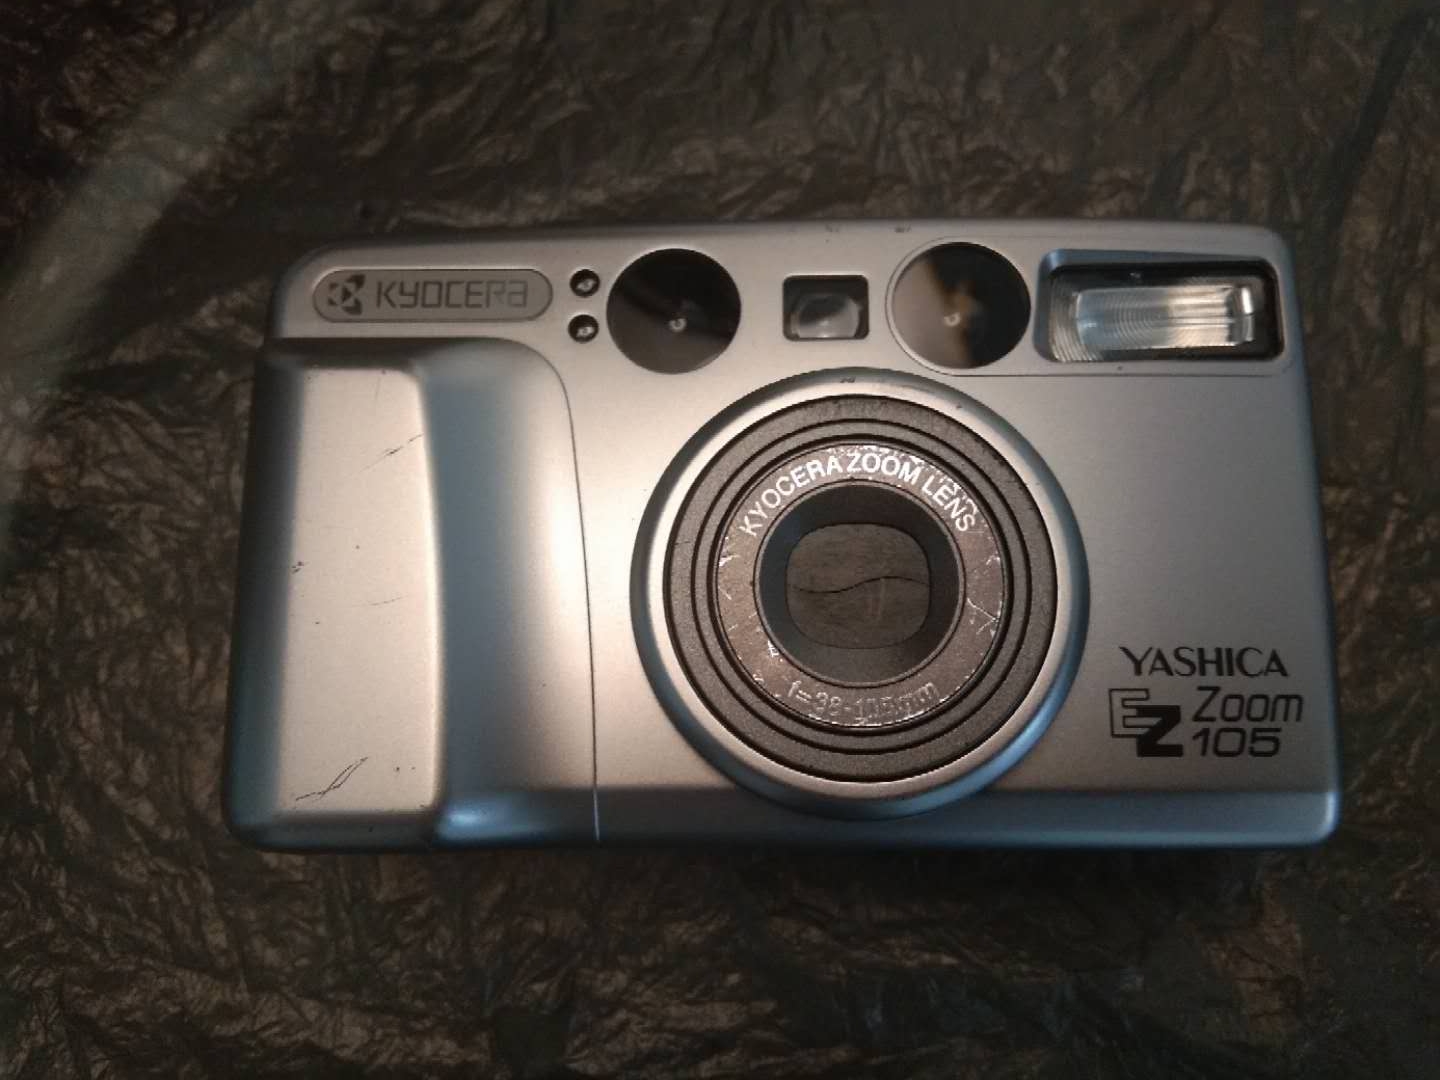 雅西卡 105 胶片相机